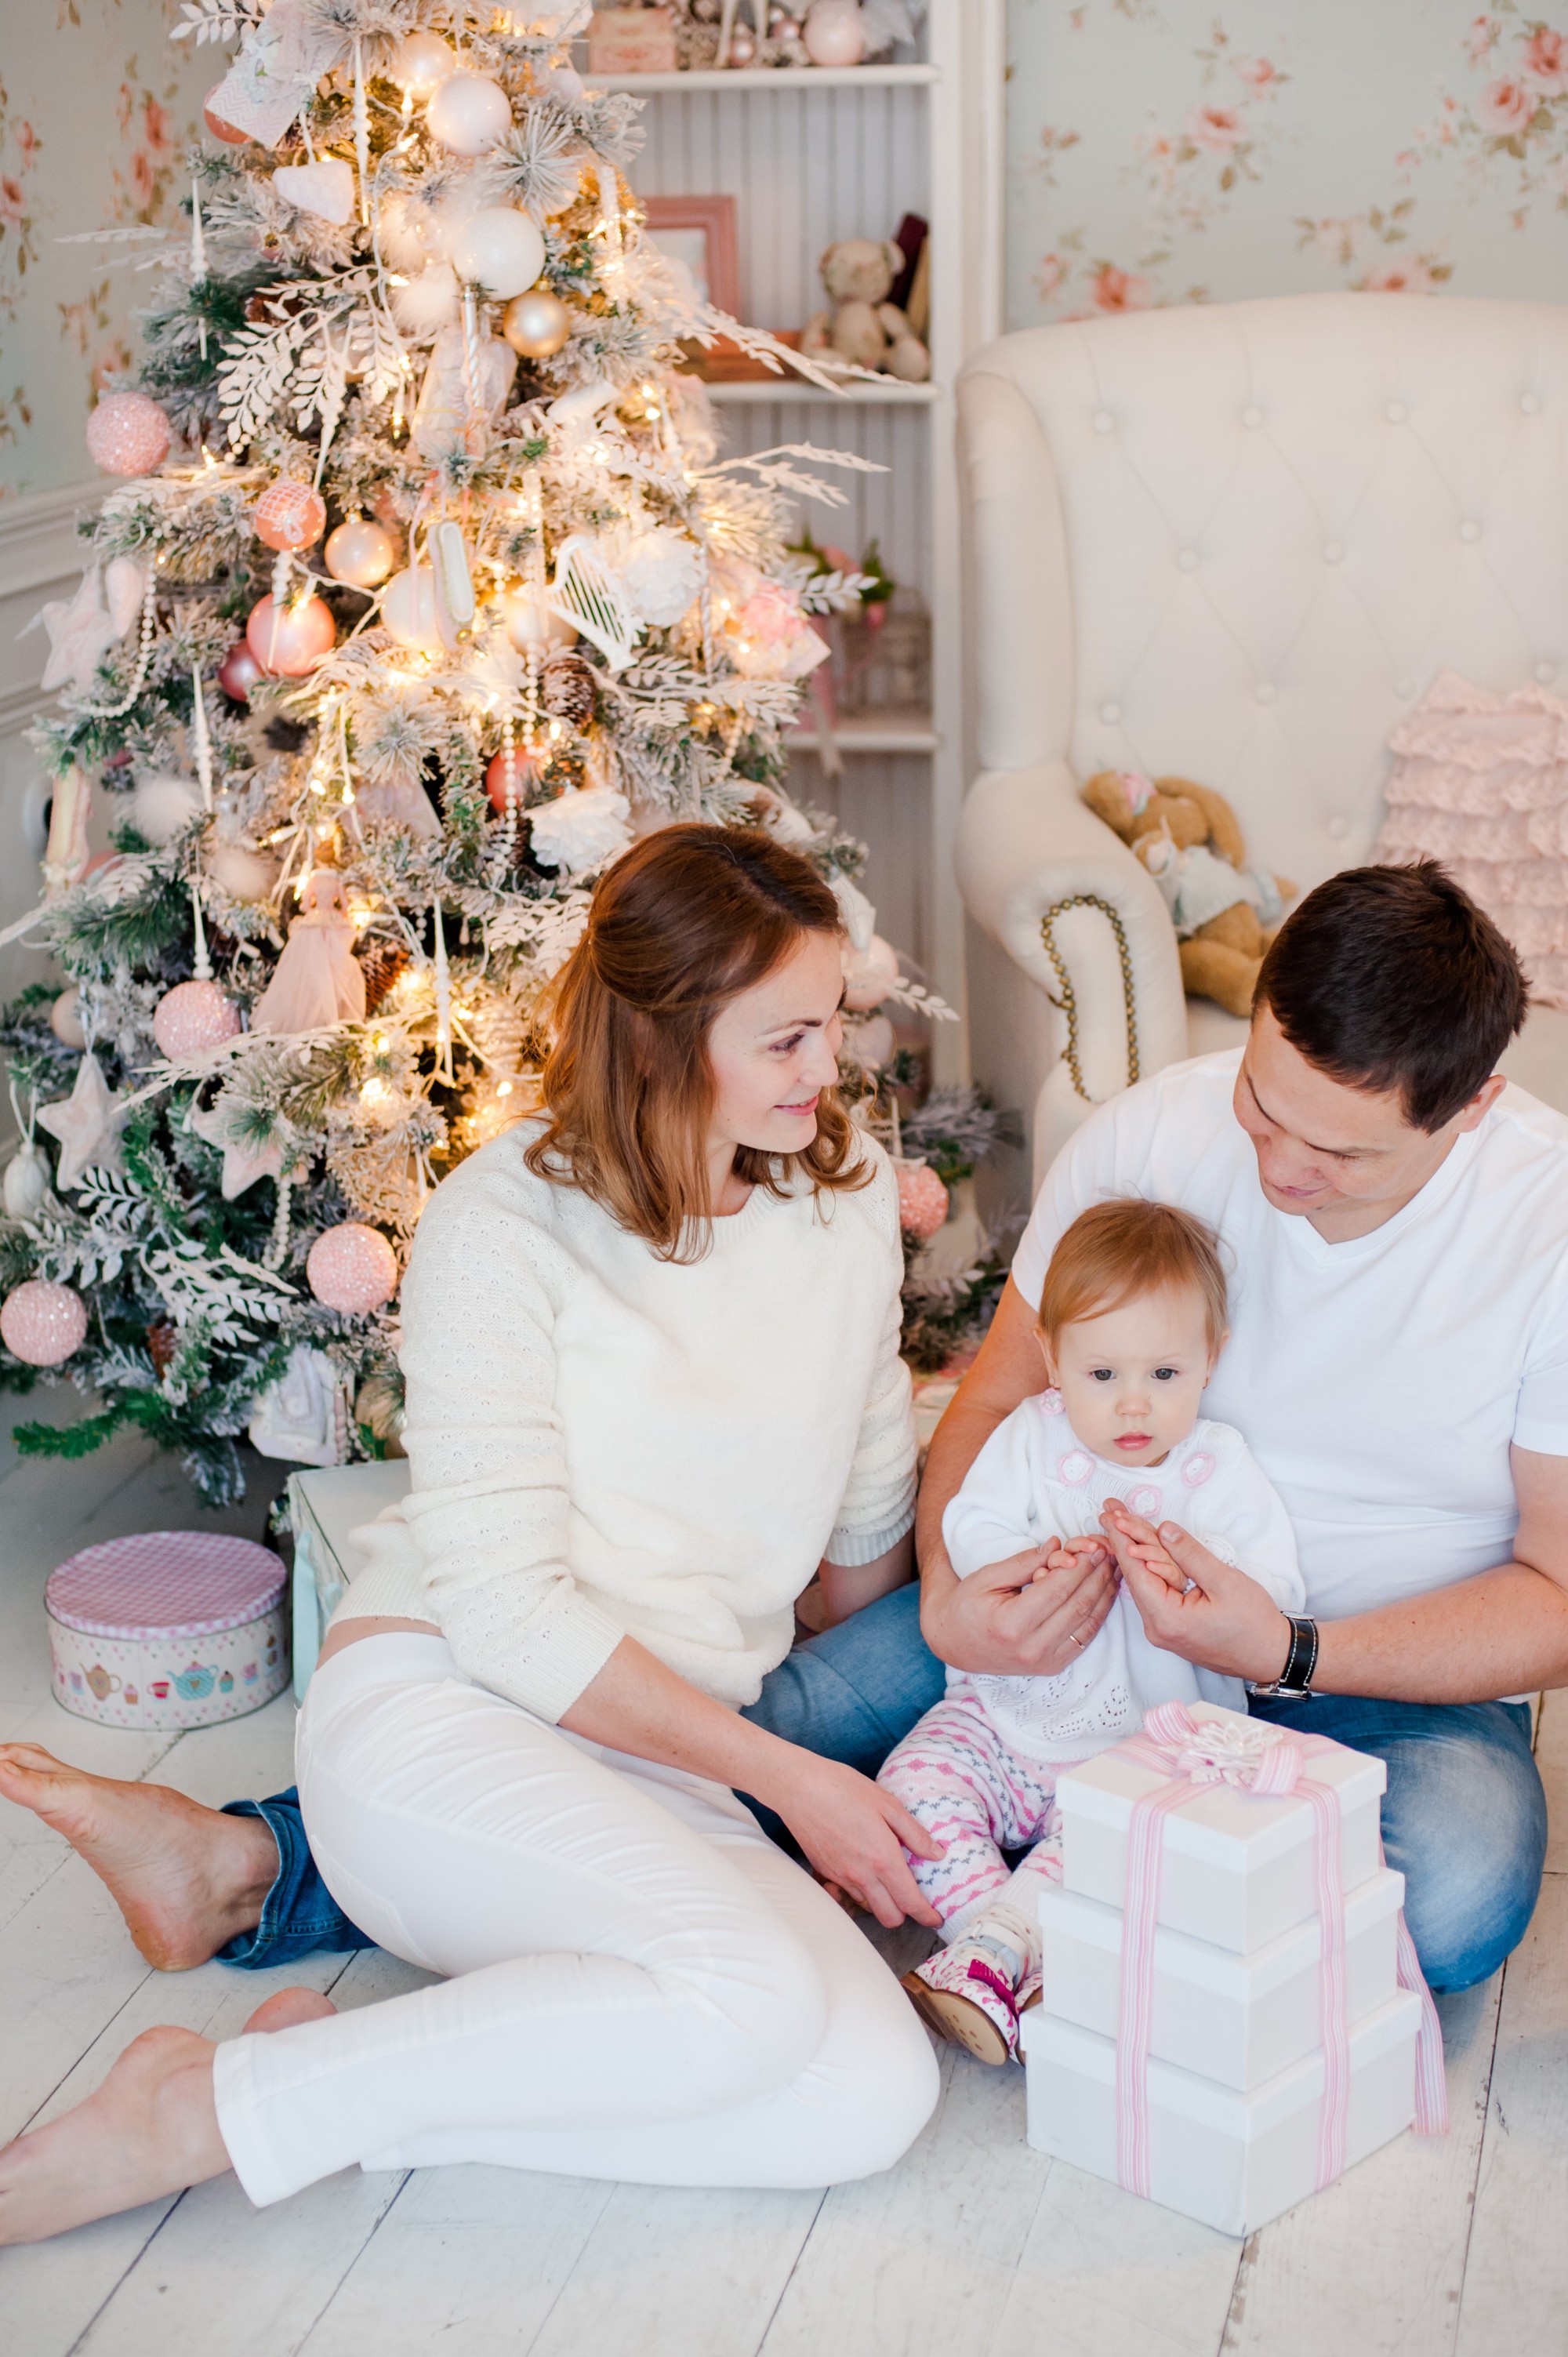 Евгения и ее семья, новогодняя фотосессия